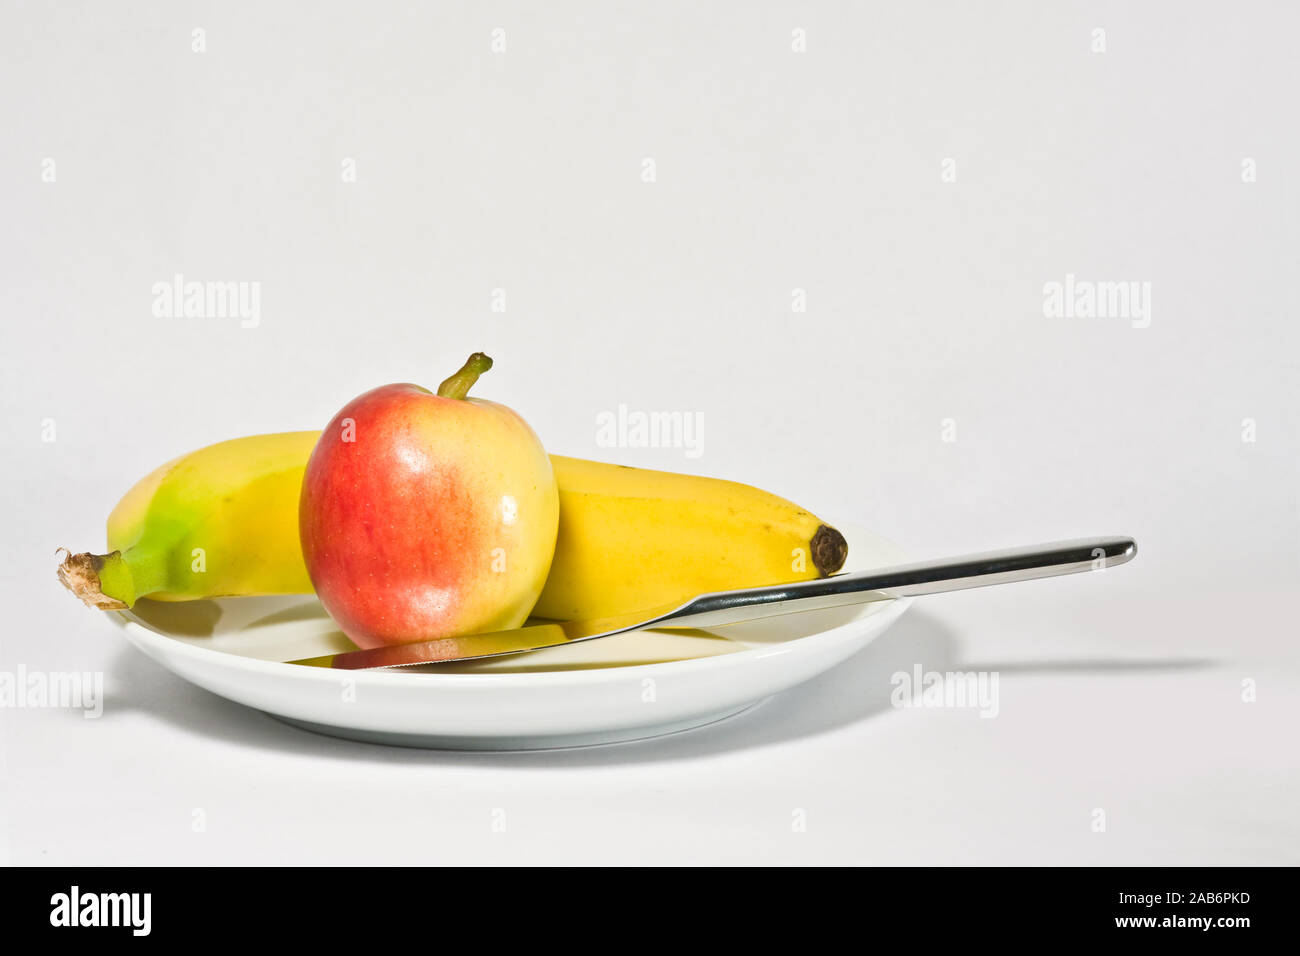 Une photographie d'une pomme et une banane Banque D'Images